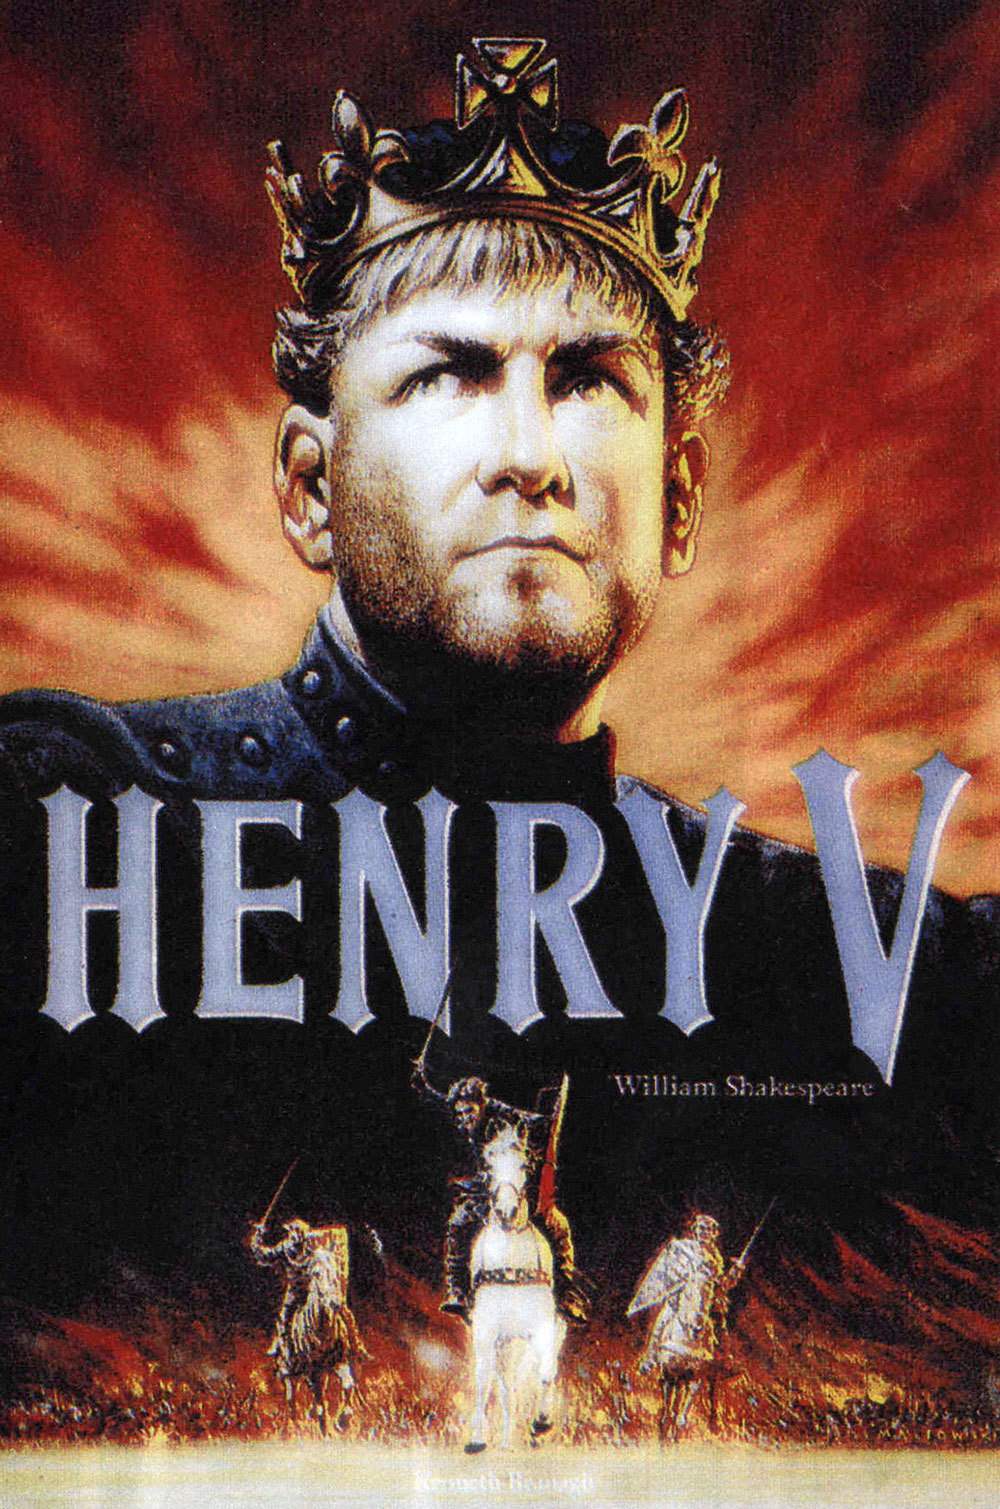 Poster for the movie "Henry V"